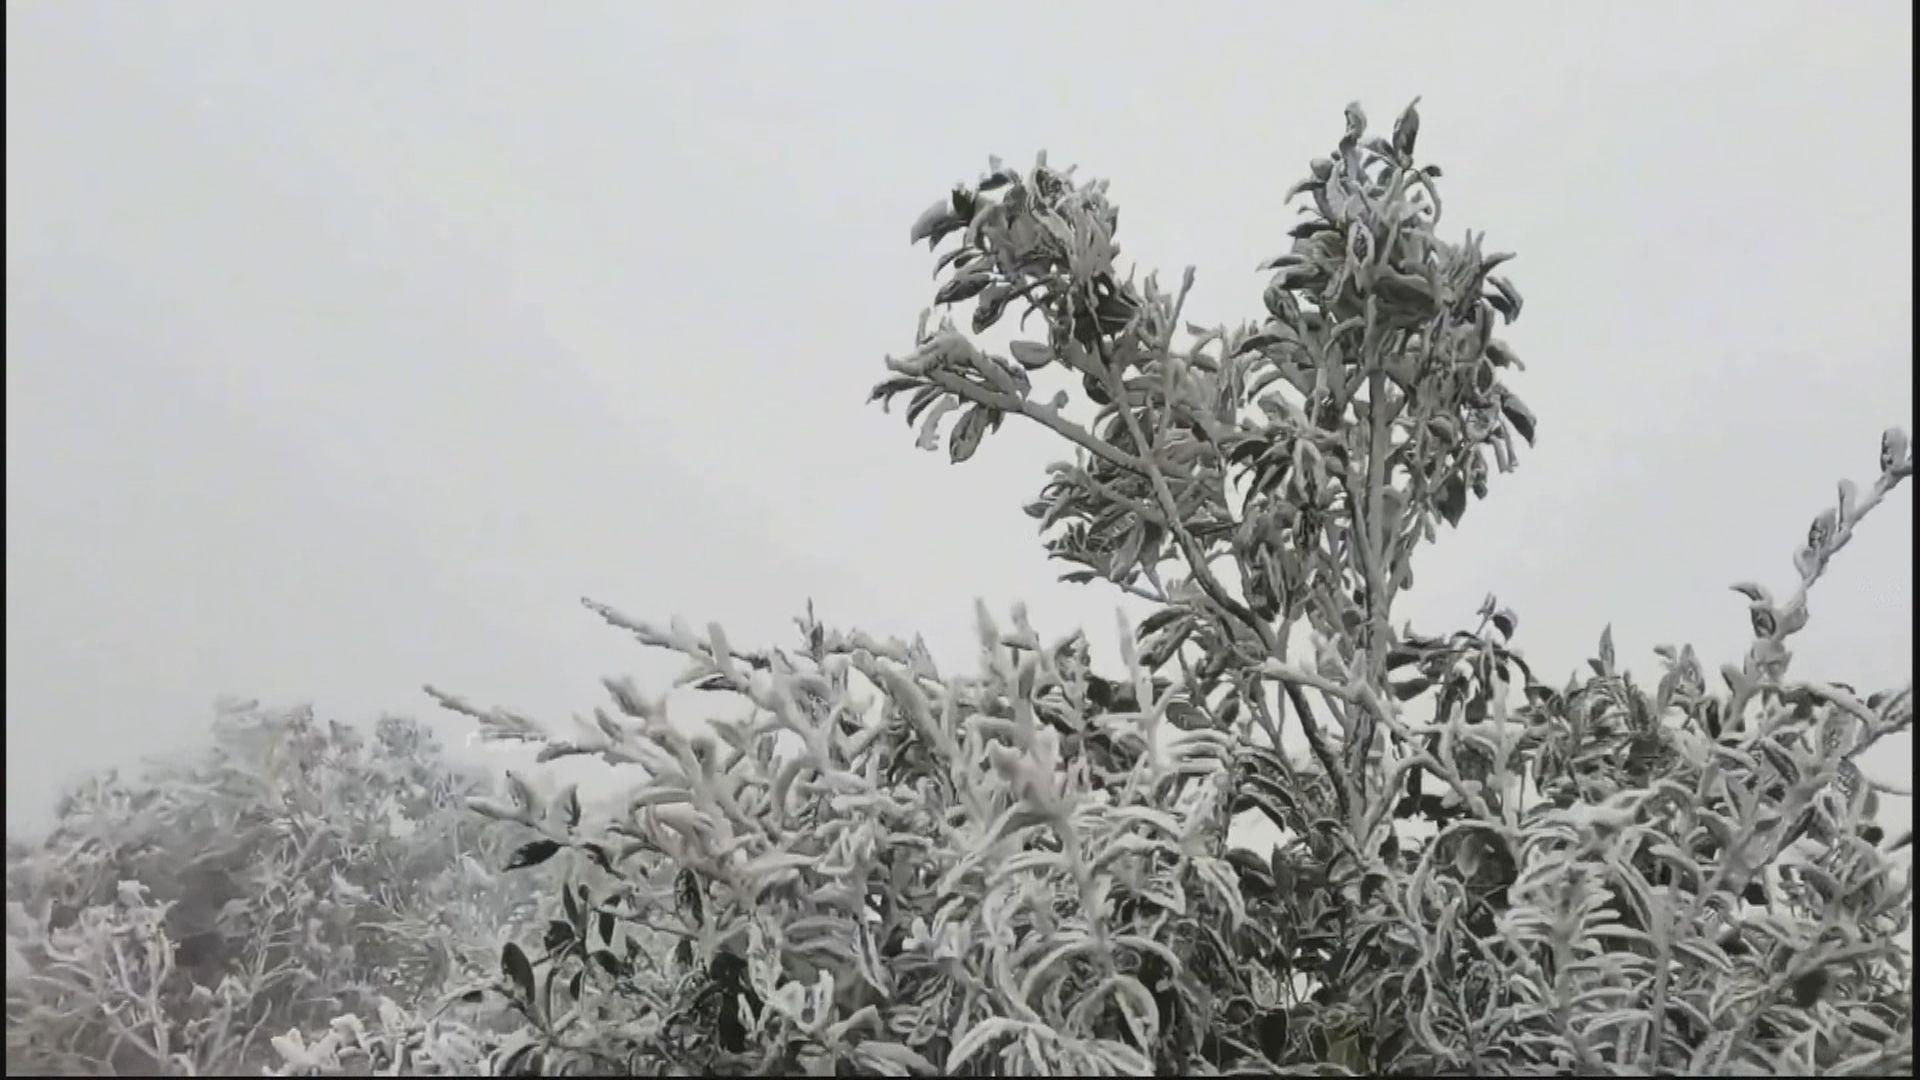 廣東多地山區嚴寒下現冰掛霧淞景觀 北方氣溫預料下周一開始回升